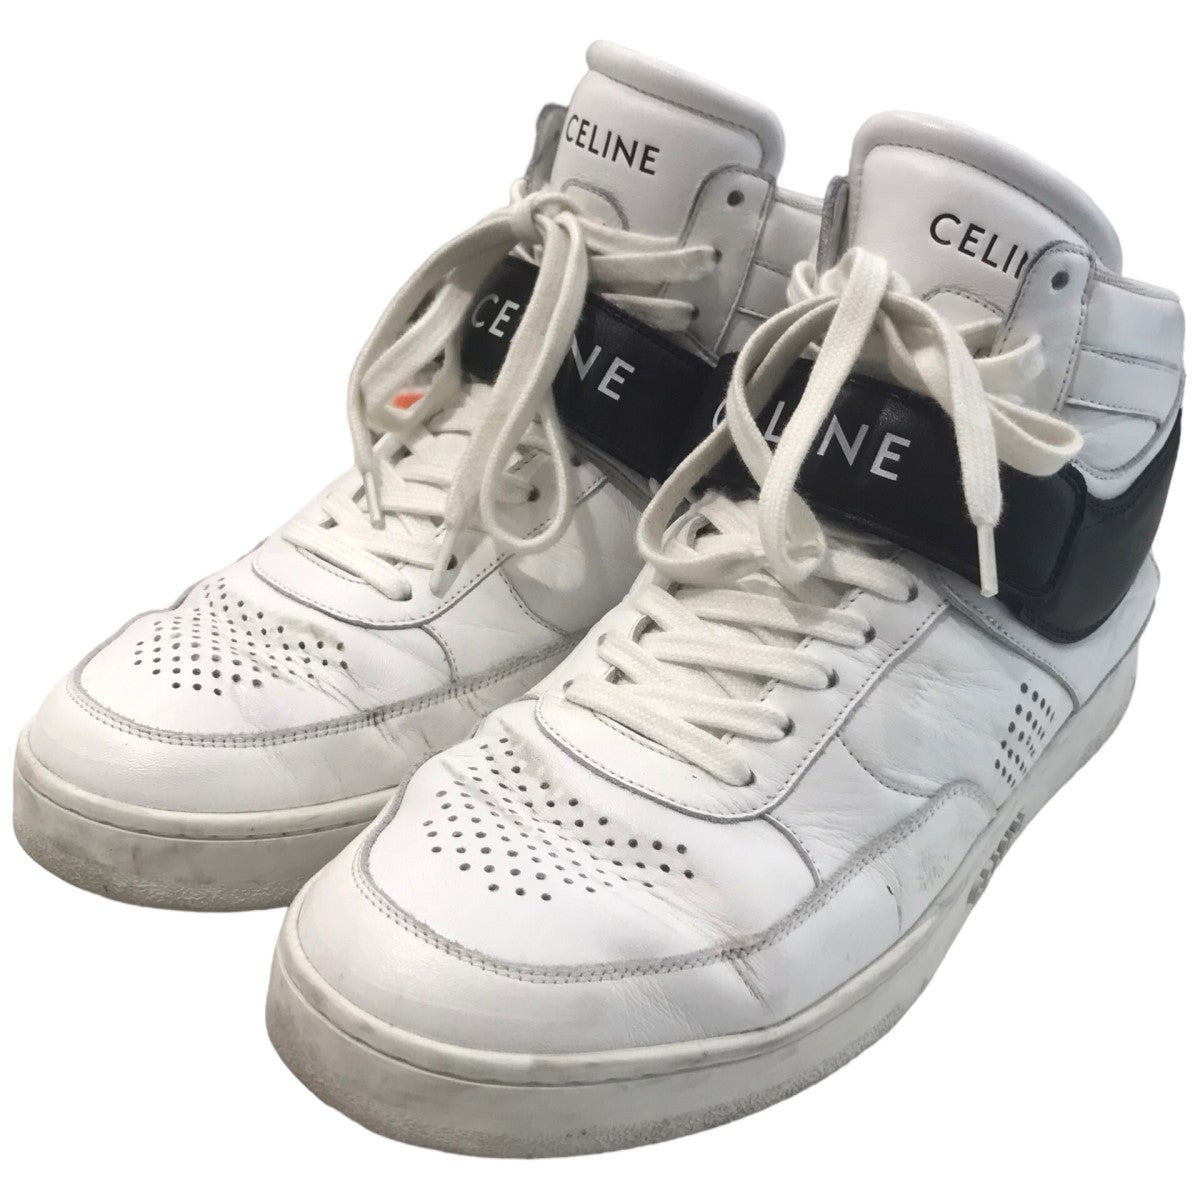 CELINE(セリーヌ) 「CT-03」ハイカットスニーカー ホワイト サイズ 12 